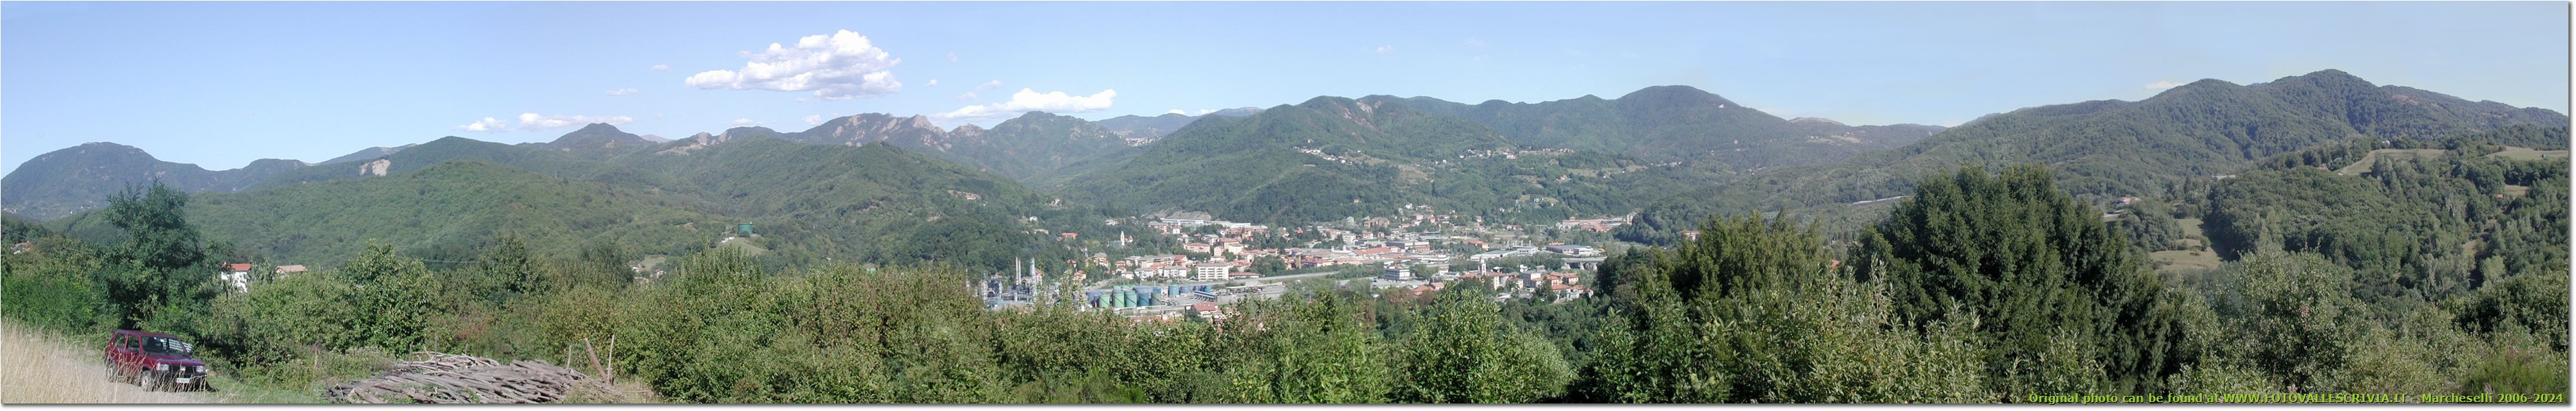 Busalla tra Monte Reale e M. Vittoria vista da Cascine - Busalla&Ronco Scrivia - <2001 - Panorami - Estate - Olympus Camedia 3000